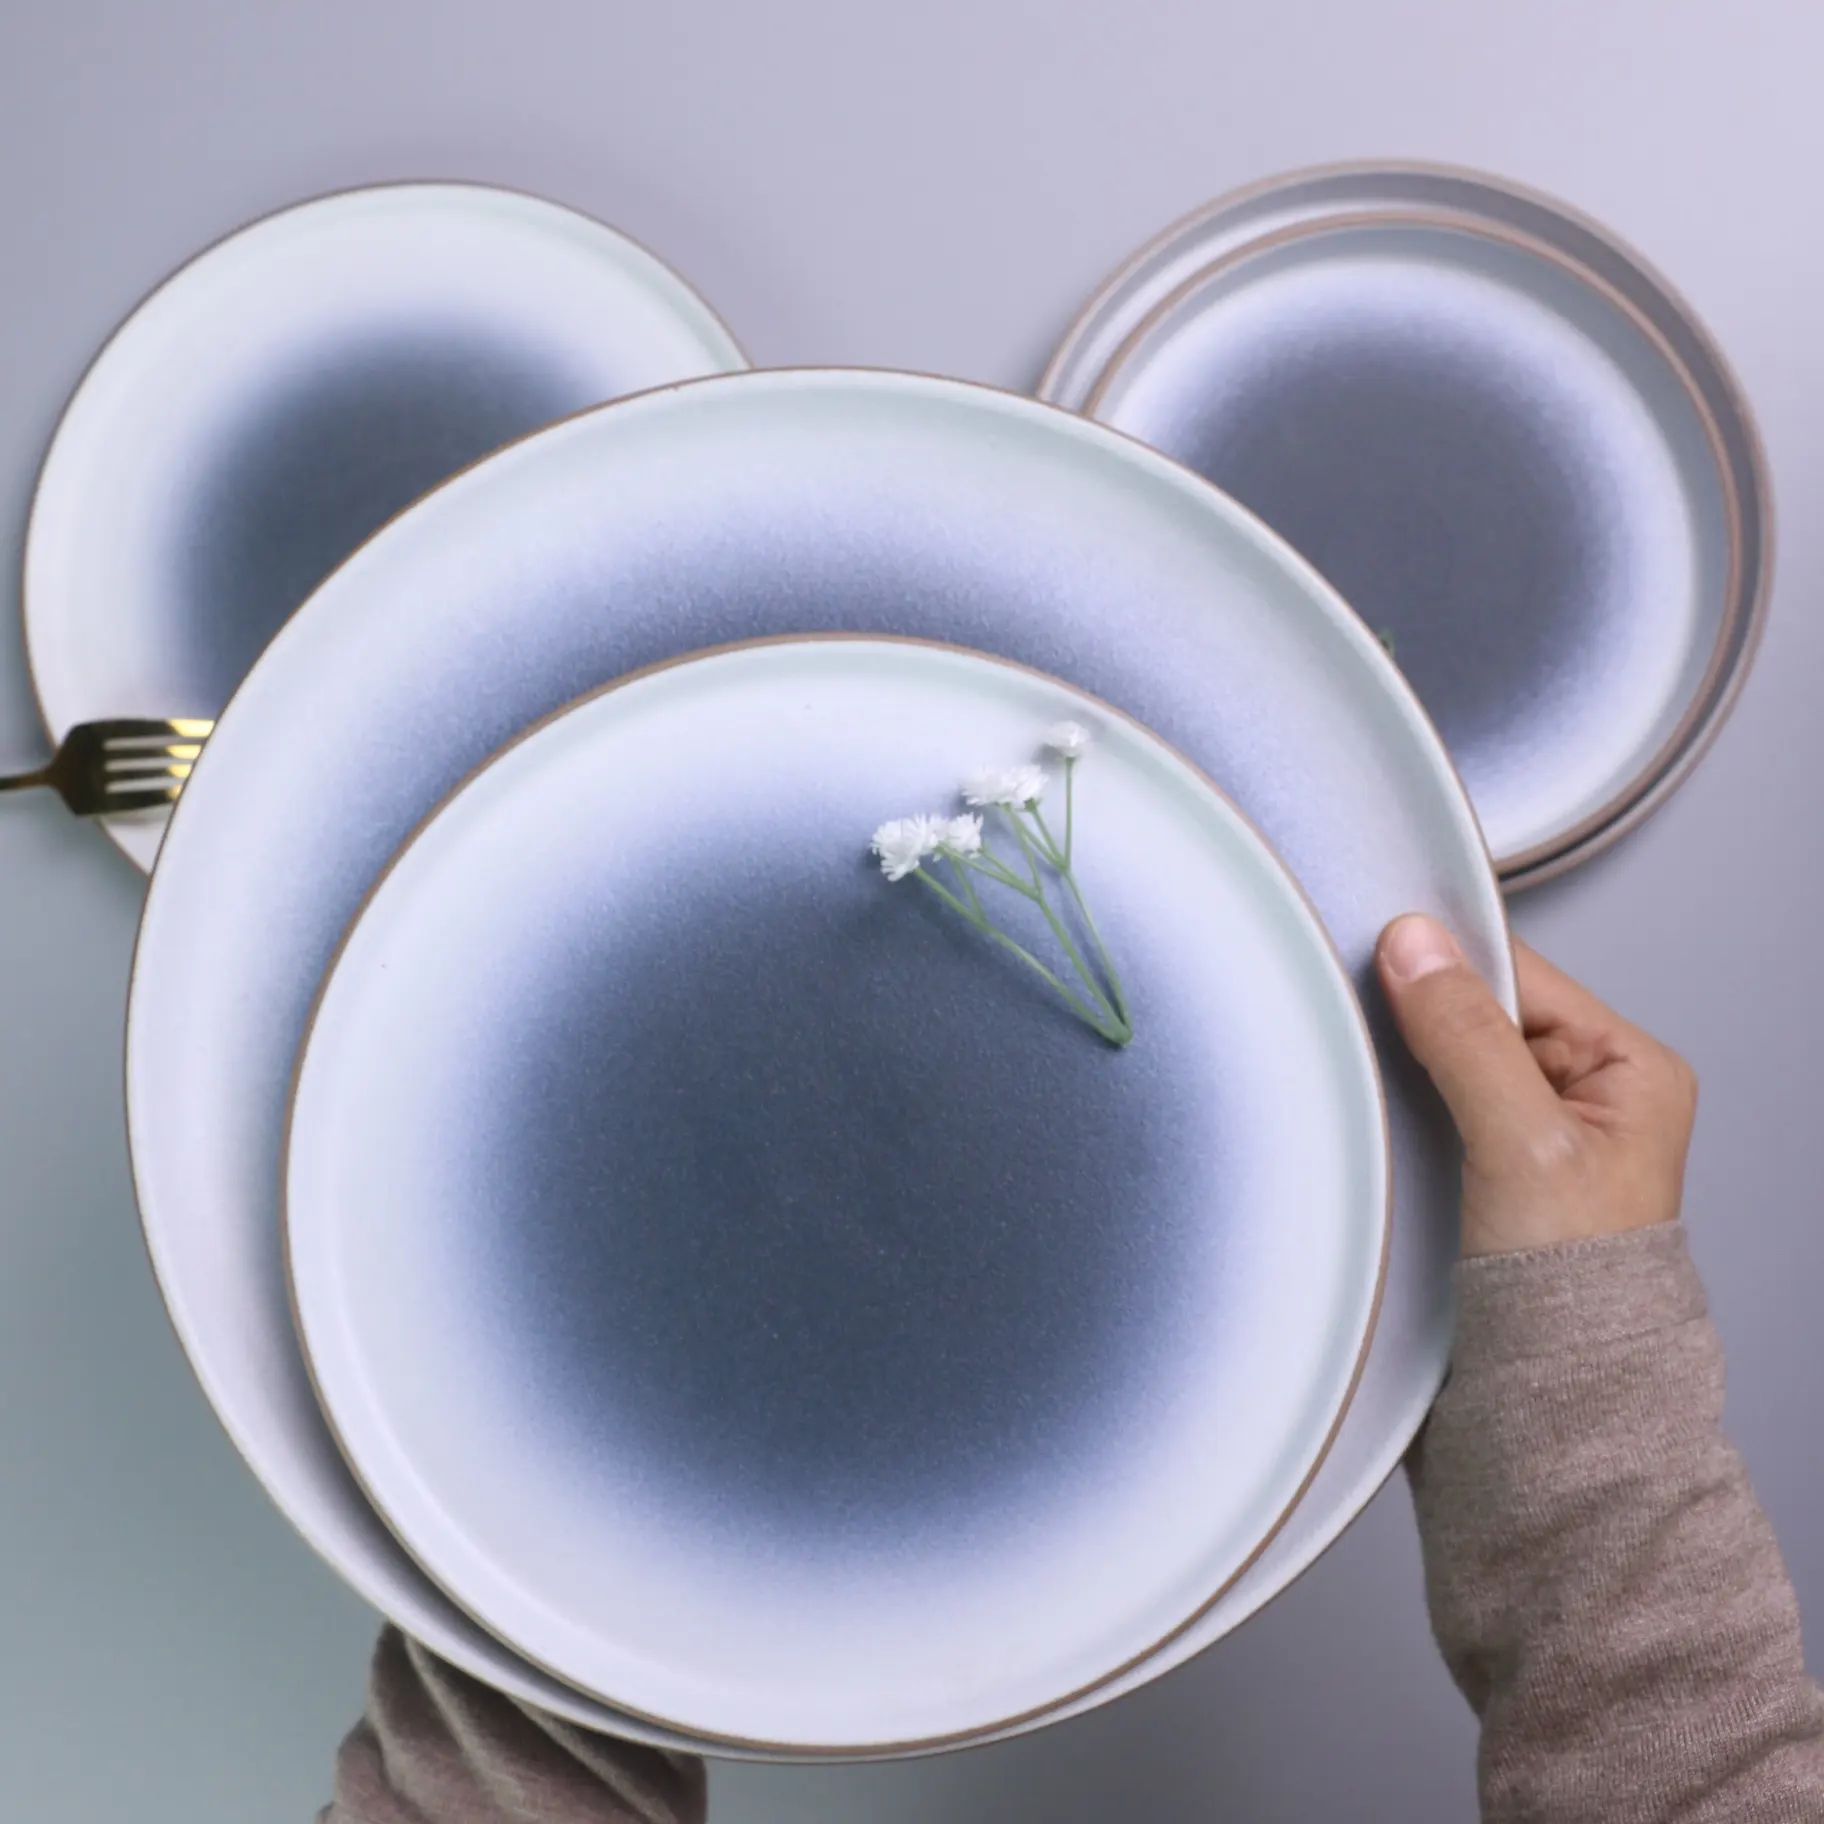 İskandinav özel lüks otel yemek plaka seti mat yuvarlak tabak plaka akşam yemeği olaylar için seramik porselen plakalar